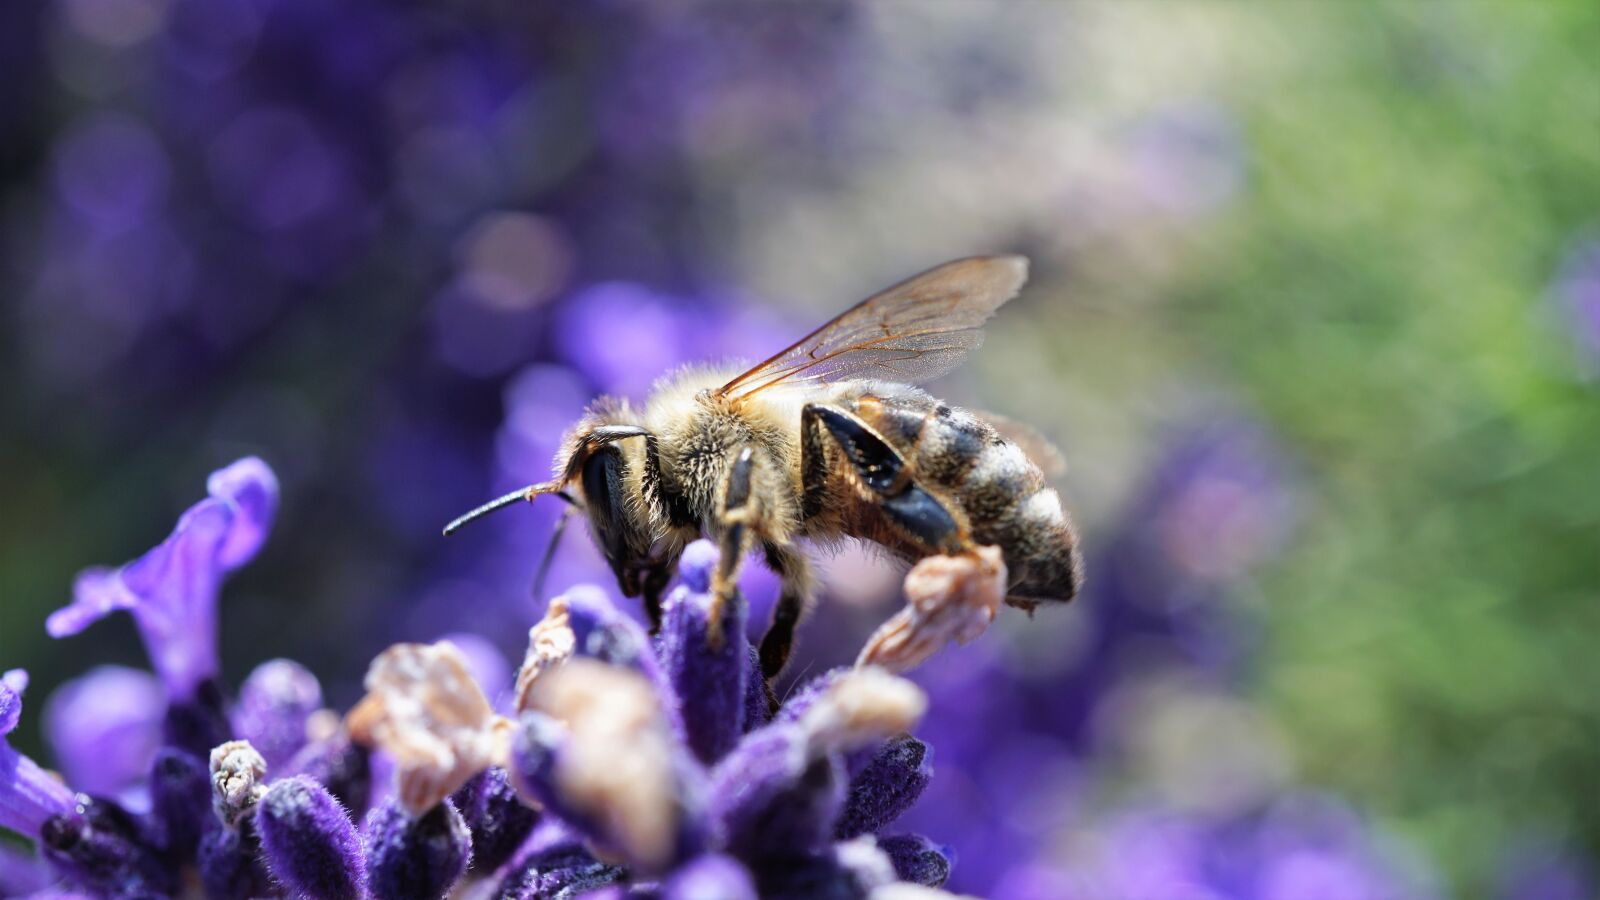 Sony a6000 + Sony E 30mm F3.5 Macro sample photo. Bee, honey bee, lavender photography